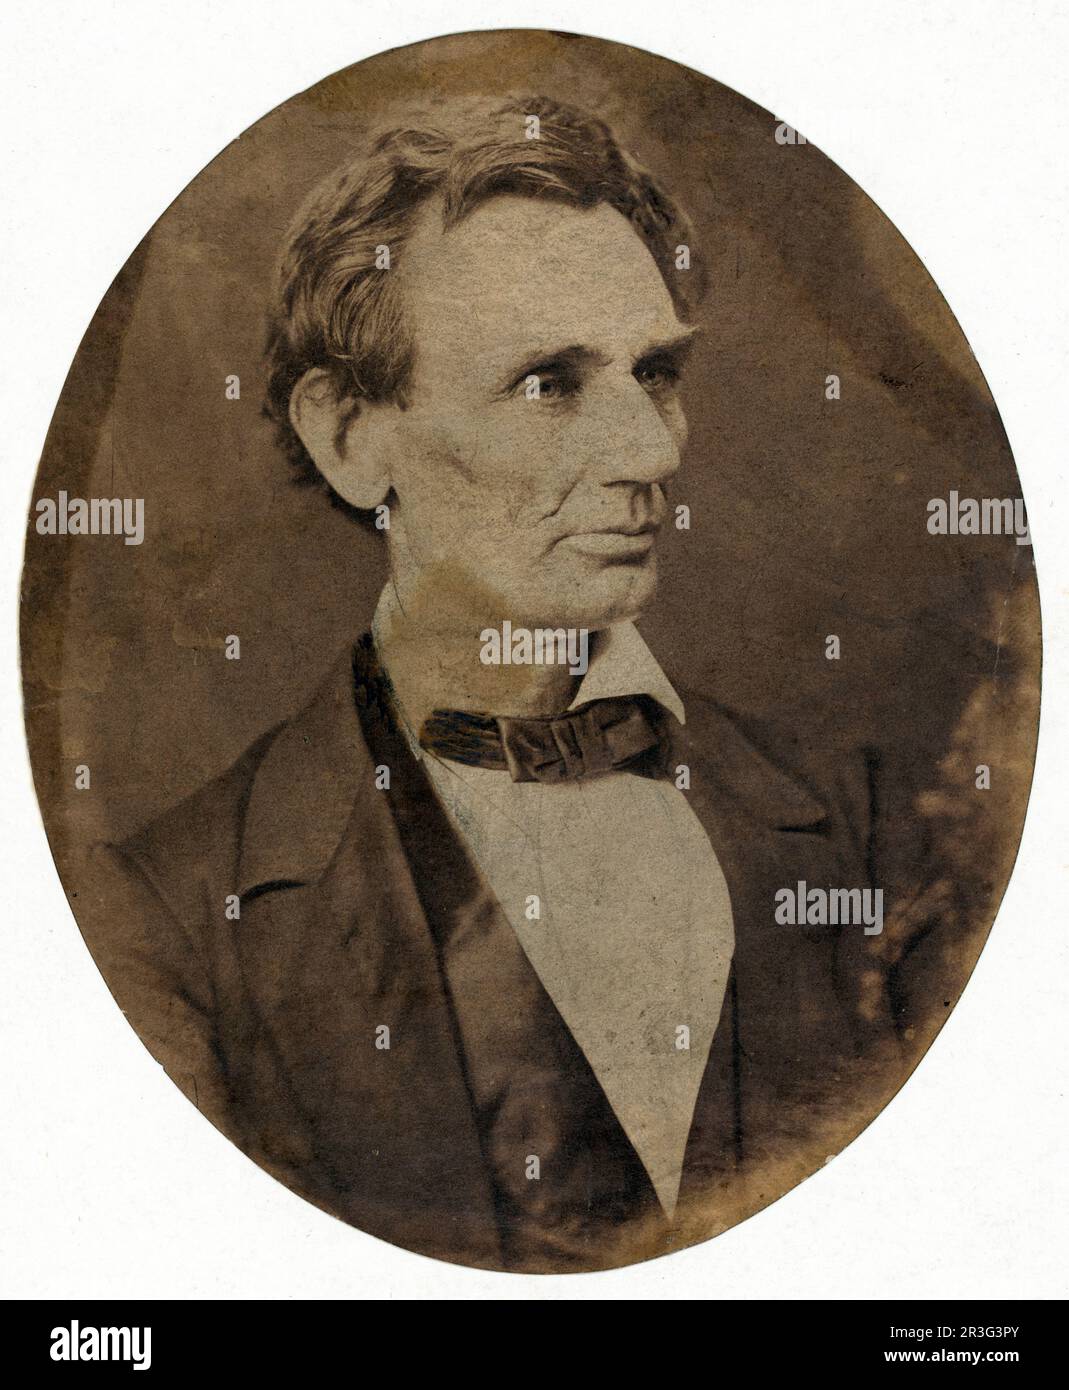 Ritratto della testa e delle spalle di Abraham Lincoln, candidato per il presidente degli Stati Uniti, 1860. Foto Stock